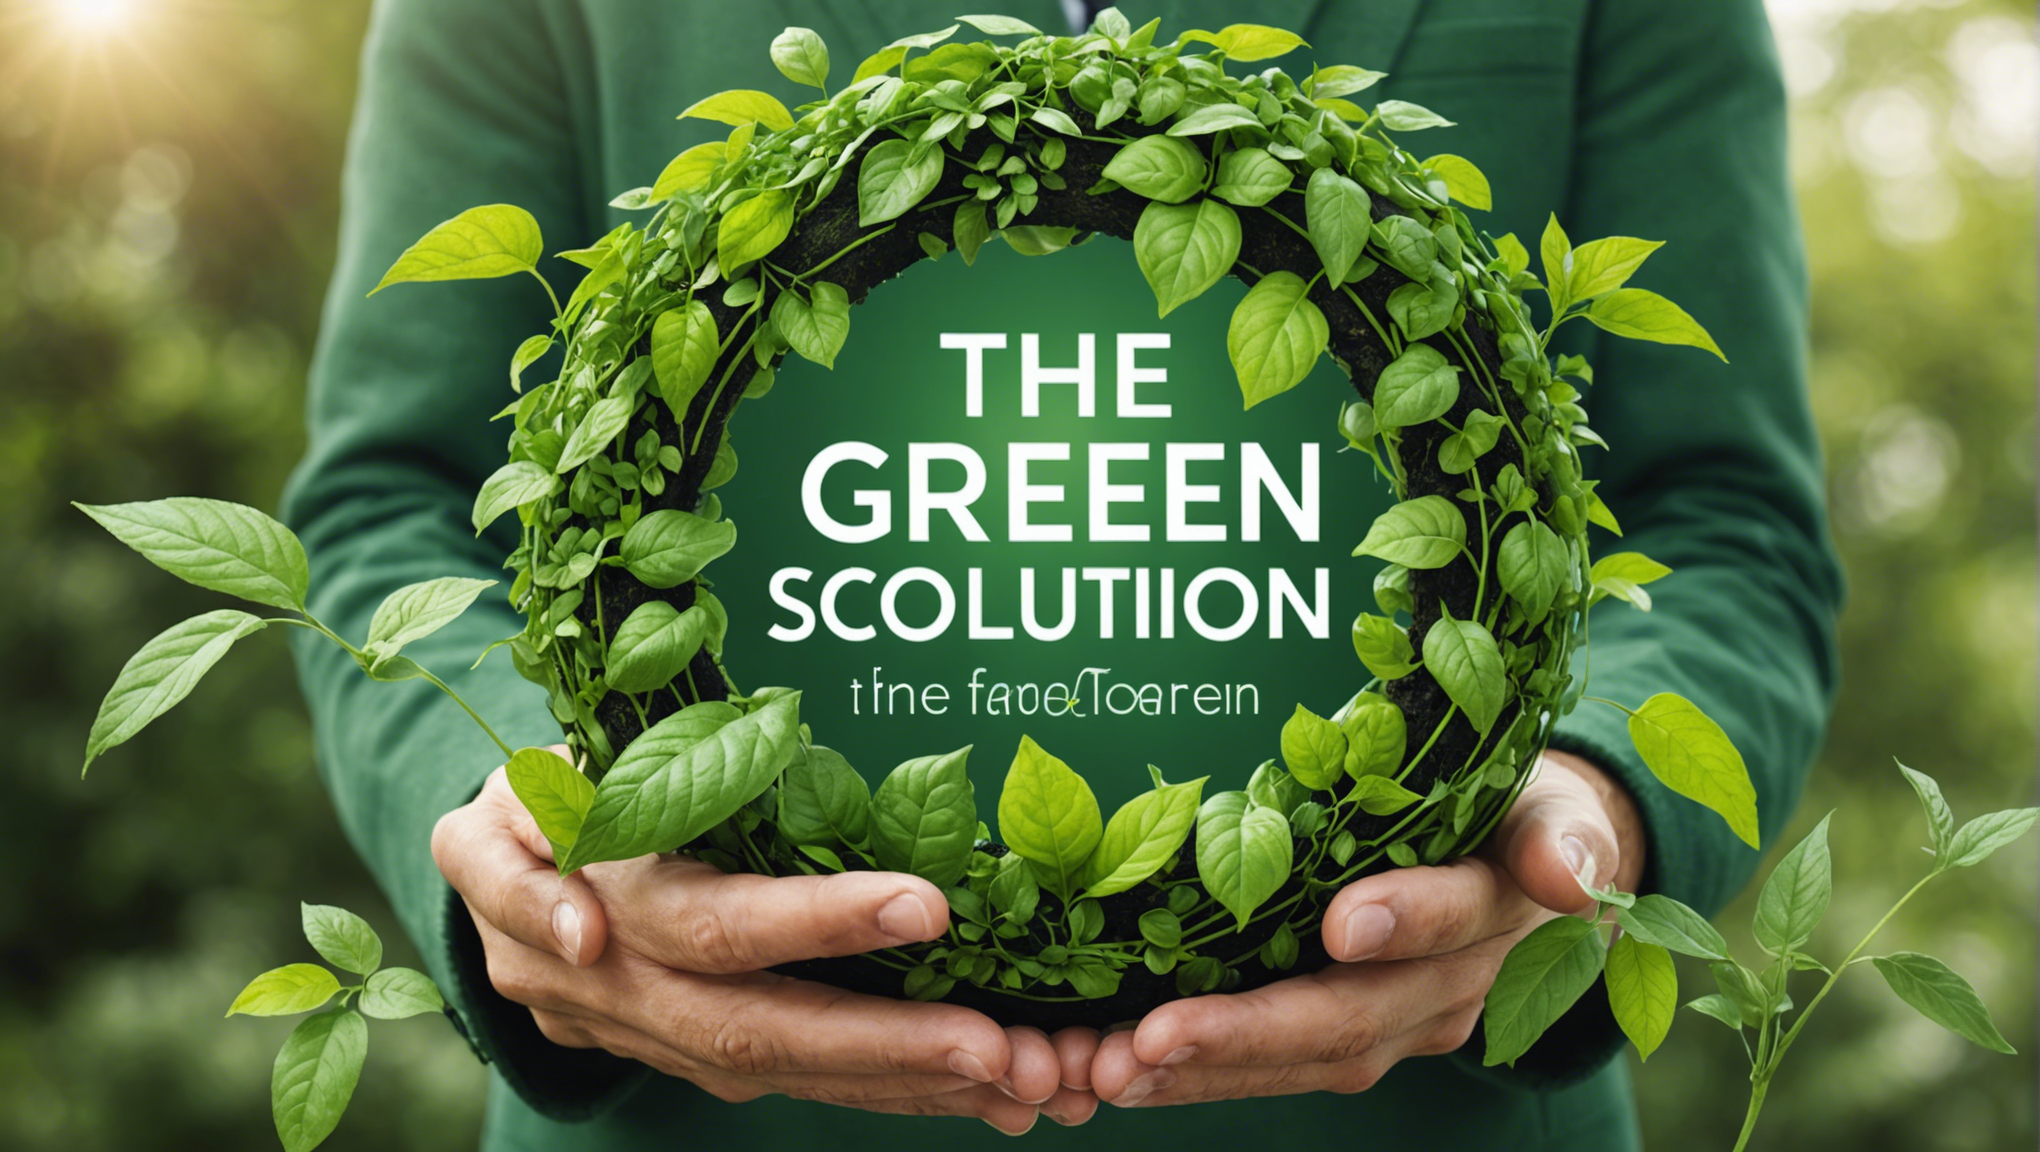 découvrez comment la solution verte peut révolutionner votre mode de vie pour un avenir durable avec nos conseils pratiques et inspirants.